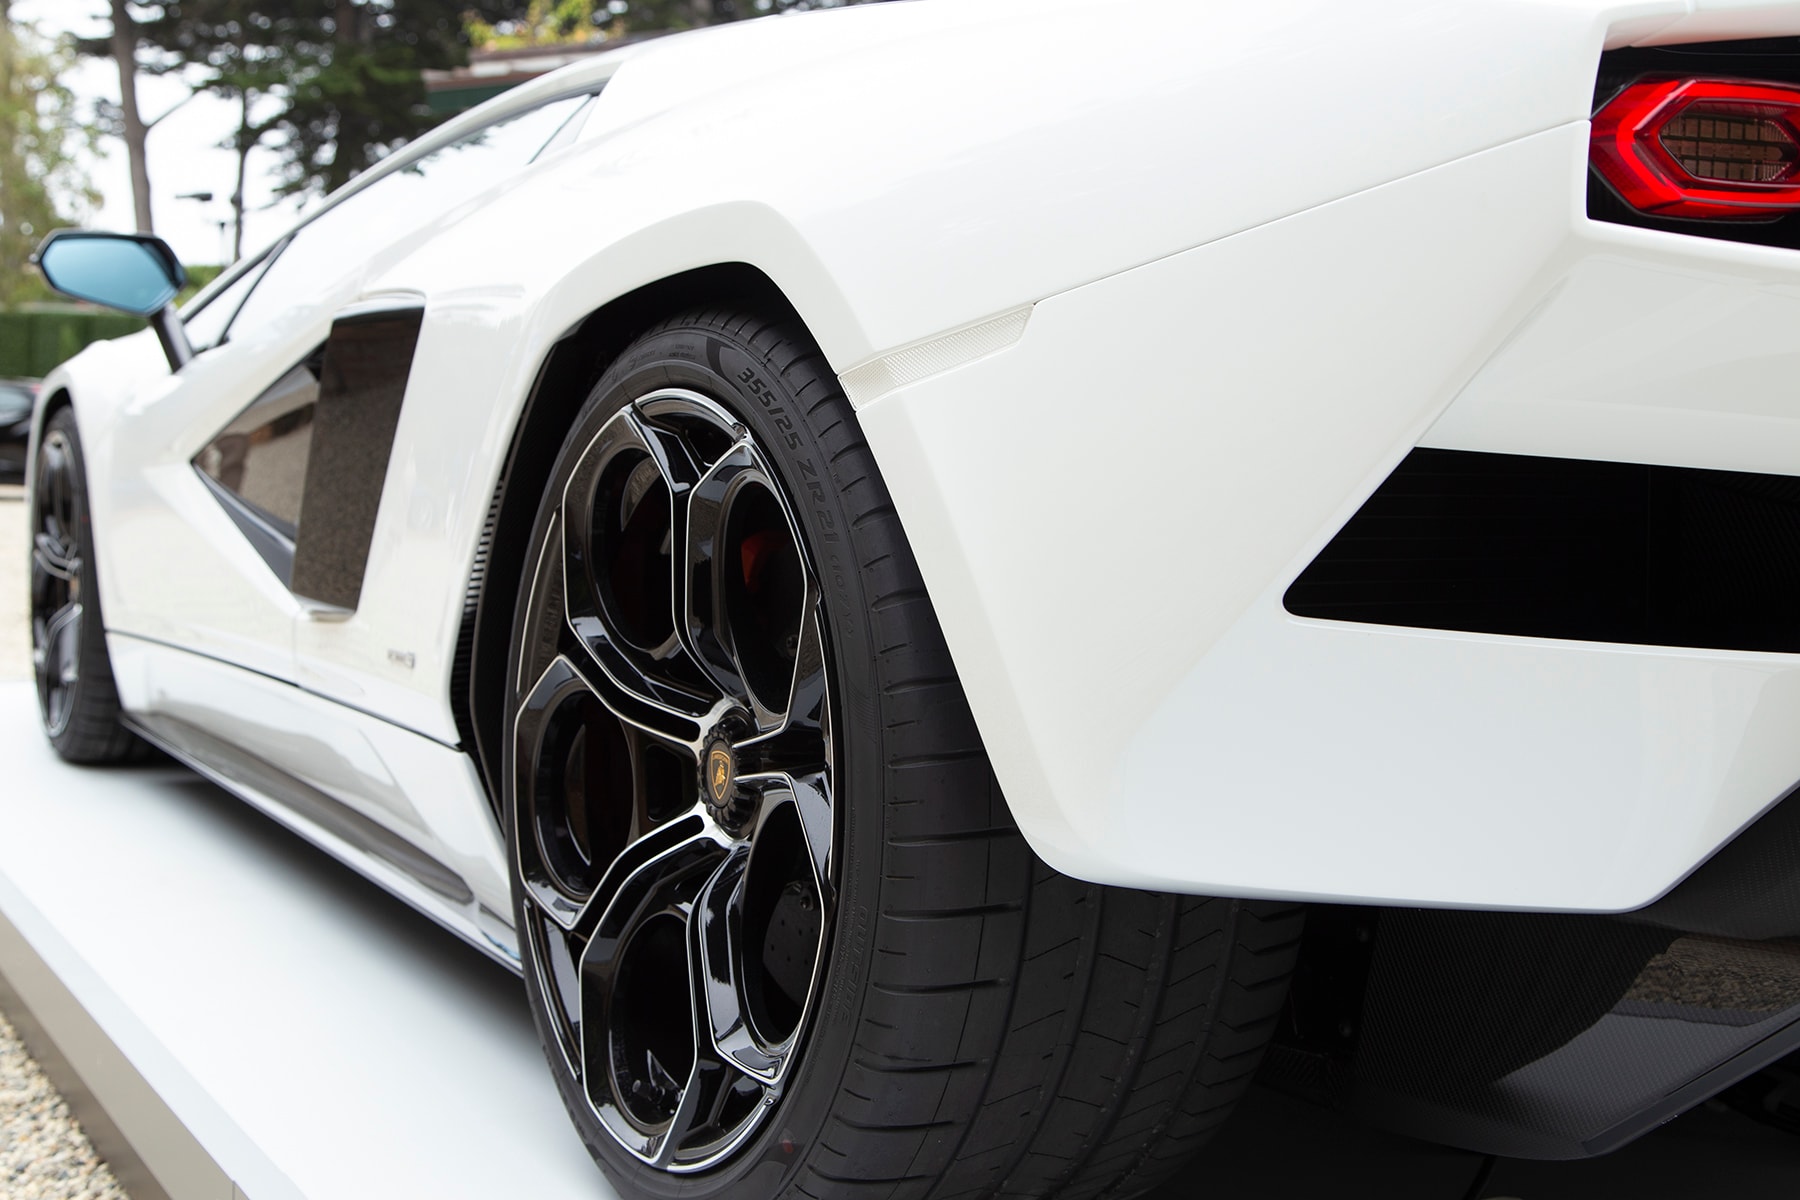 ランボルギーニがカウンタック誕生50周年記念モデル LPI 800-4 を発表 Lamborghini Countach Exclusive Photos and Details Monterey Car Week 2021 The Quail Motorsports Gathering Concours d'Elegance HYPEBEAST Car Club